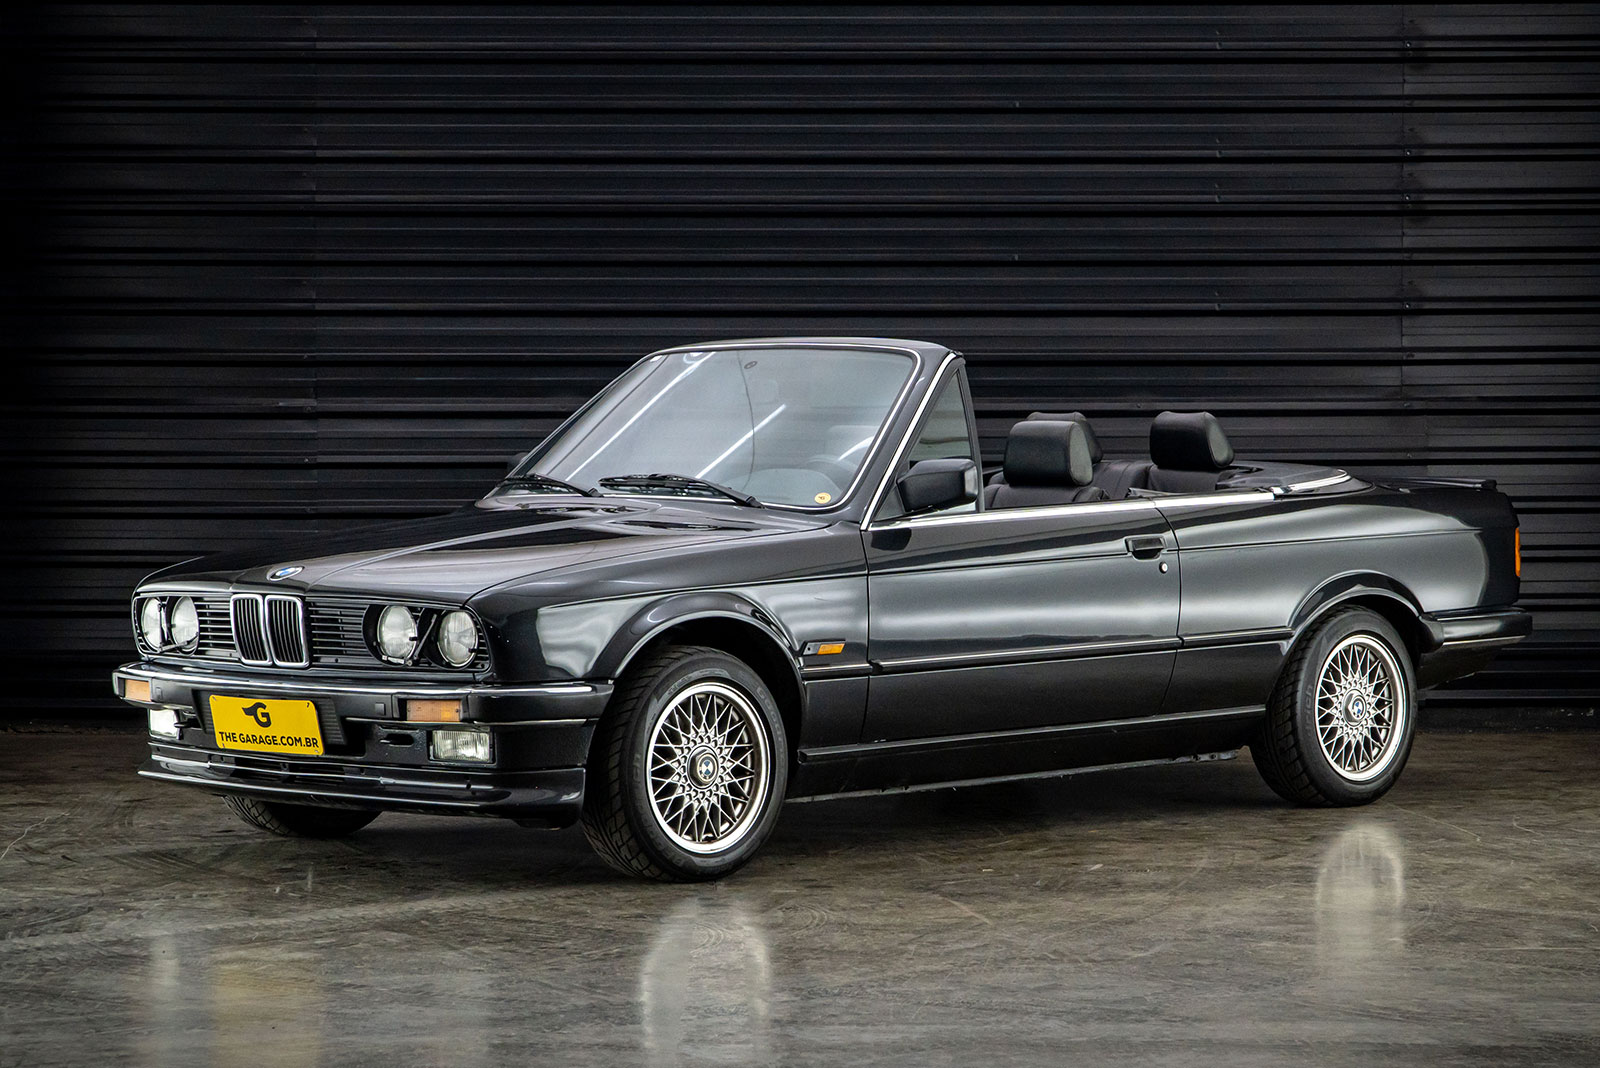 1987-BMW-325ia-E30-Cabrio-venda-sao-paulo-for-sale-classicos-a-melhor-loja-de-carros-antigos-acervo-de-carros